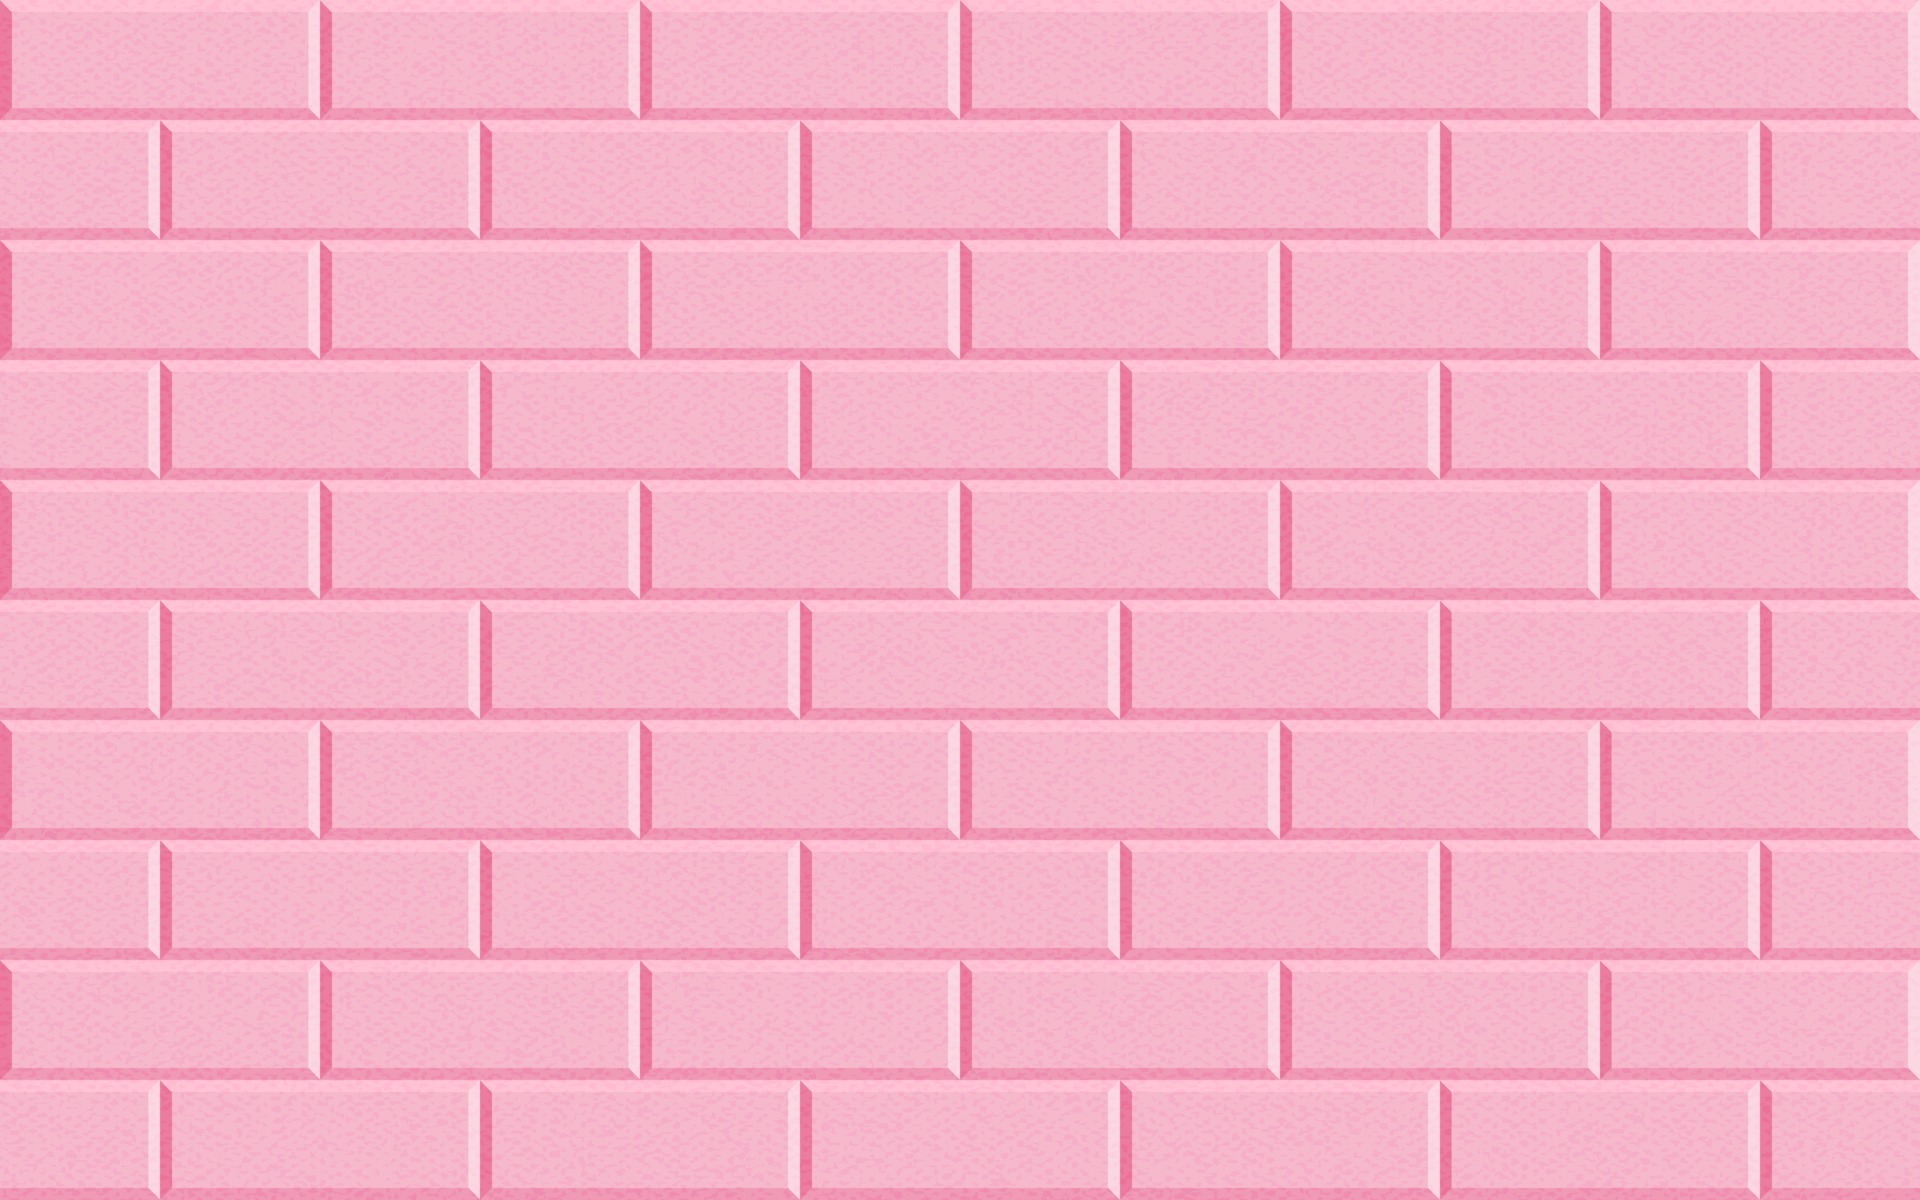 Mẫu hoa văn tường gạch hồng mang đến một diện mạo sang trọng và quyến rũ cho ngôi nhà của bạn. Với những đường nét đan xen tinh tế và màu sắc tươi sáng, mẫu hoa văn này là sự lựa chọn hoàn hảo cho những ai muốn tạo ra một không gian độc đáo và nổi bật.